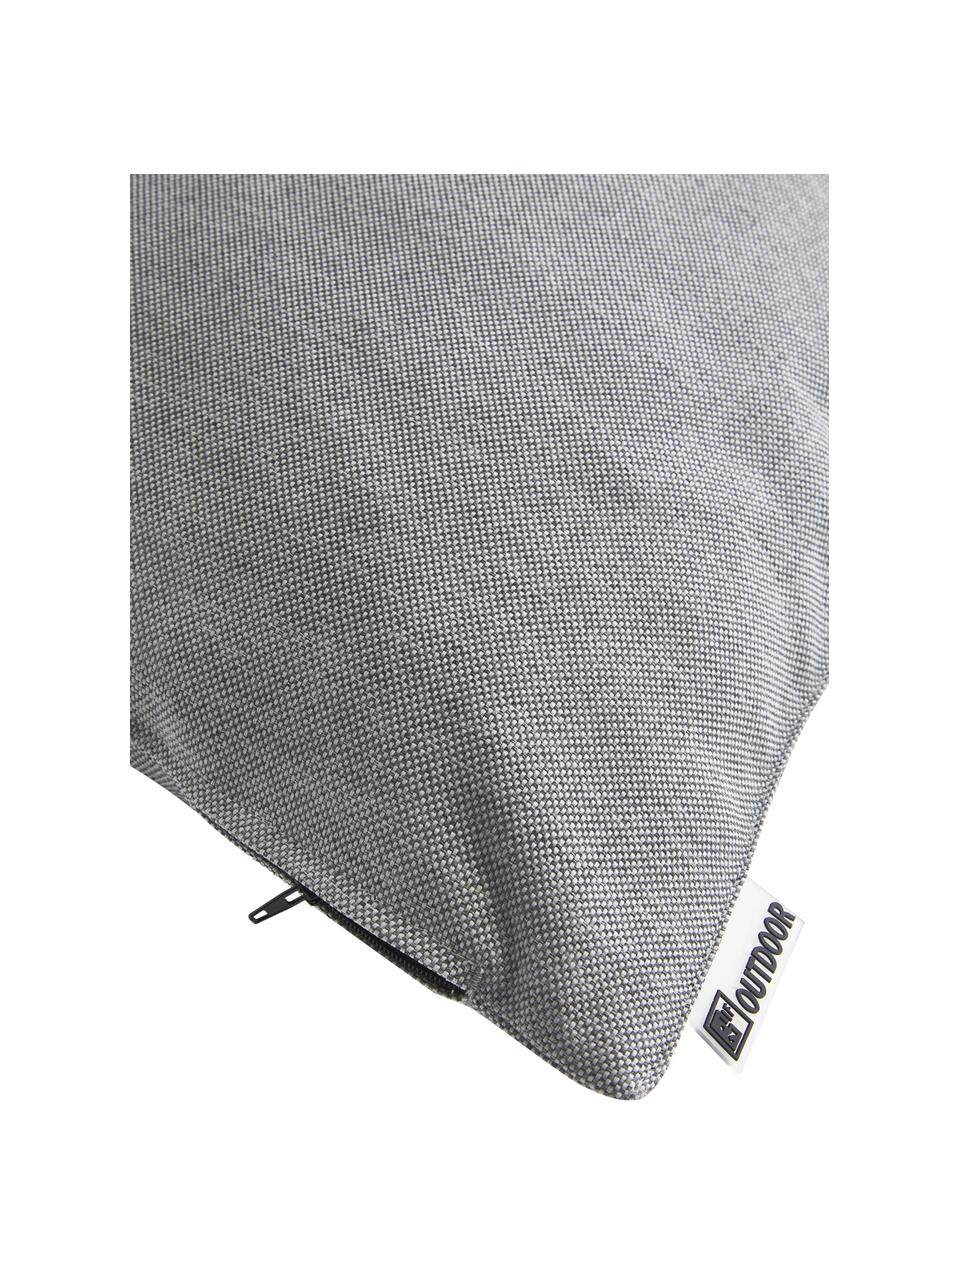 Outdoor-Kissen Olef in Grau, 100 % Baumwolle, Grau, B 45 x L 45 cm